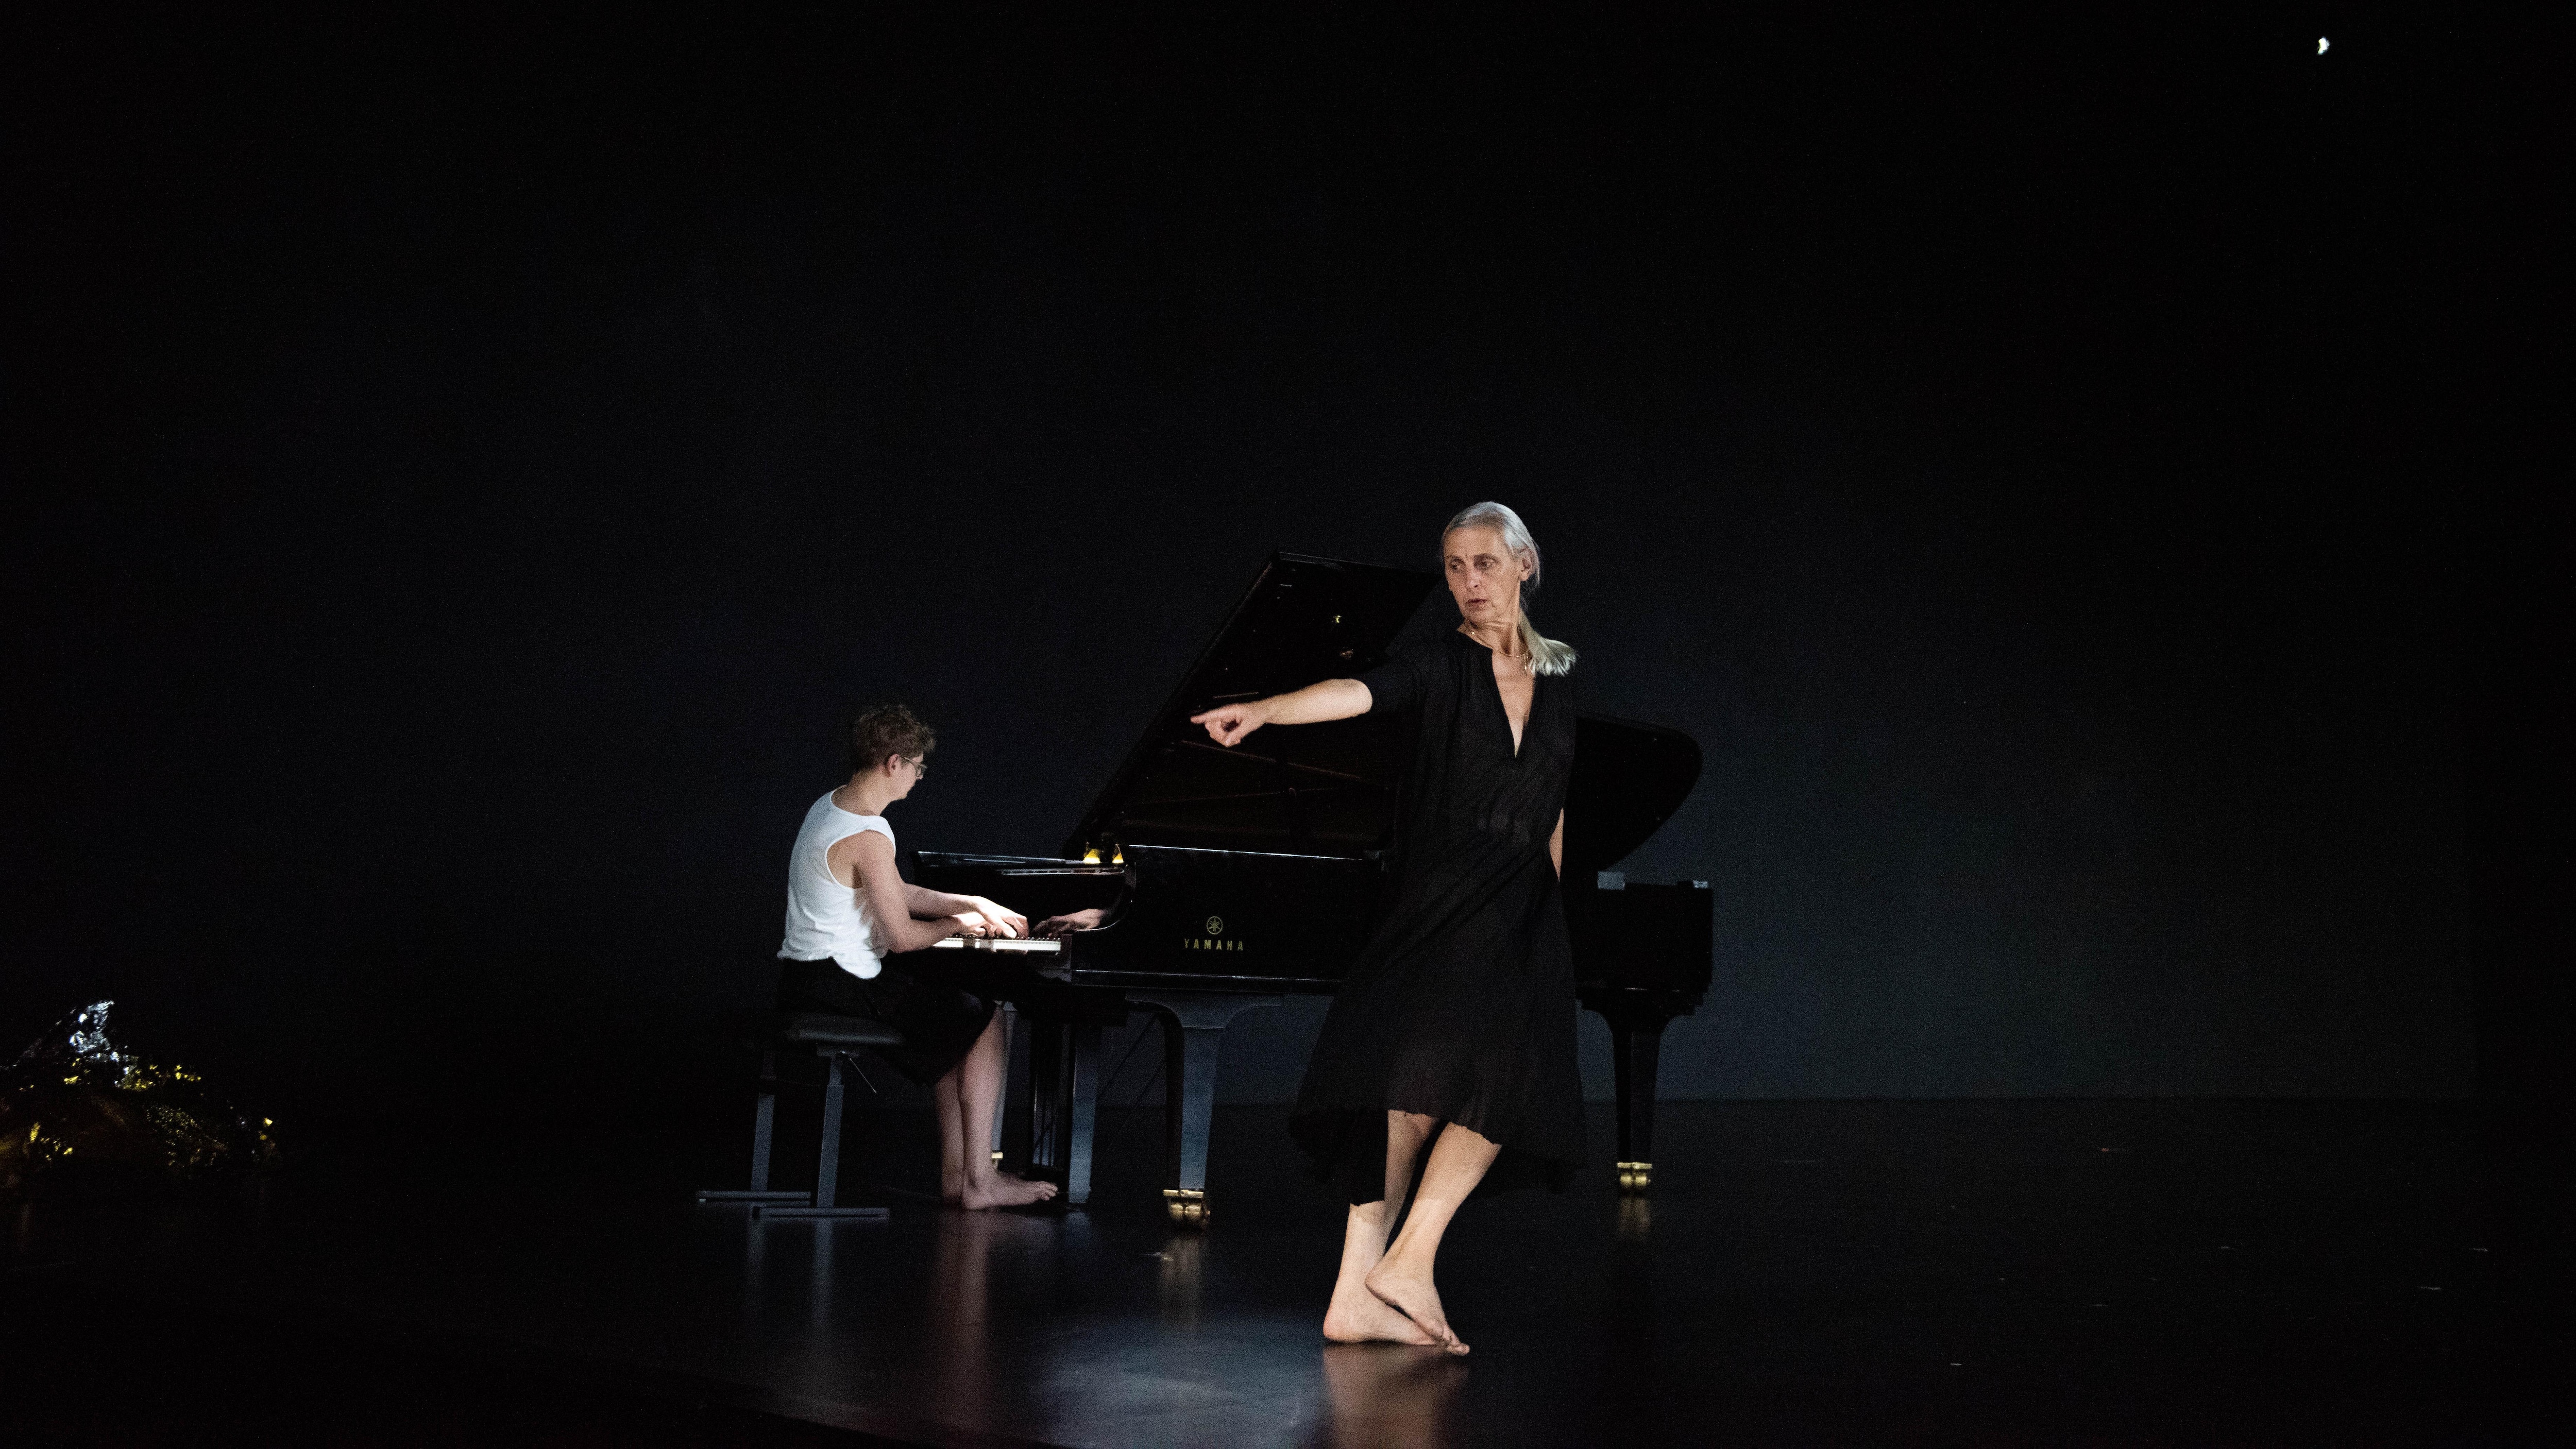 Sur une scène noire, une danseuse vêtue d’une robe noire avec un profond col en V pointe du doigt vers la gauche, ses pieds nus la menant dans la direction opposée avec, derrière elle, un jeune homme jouant du piano.